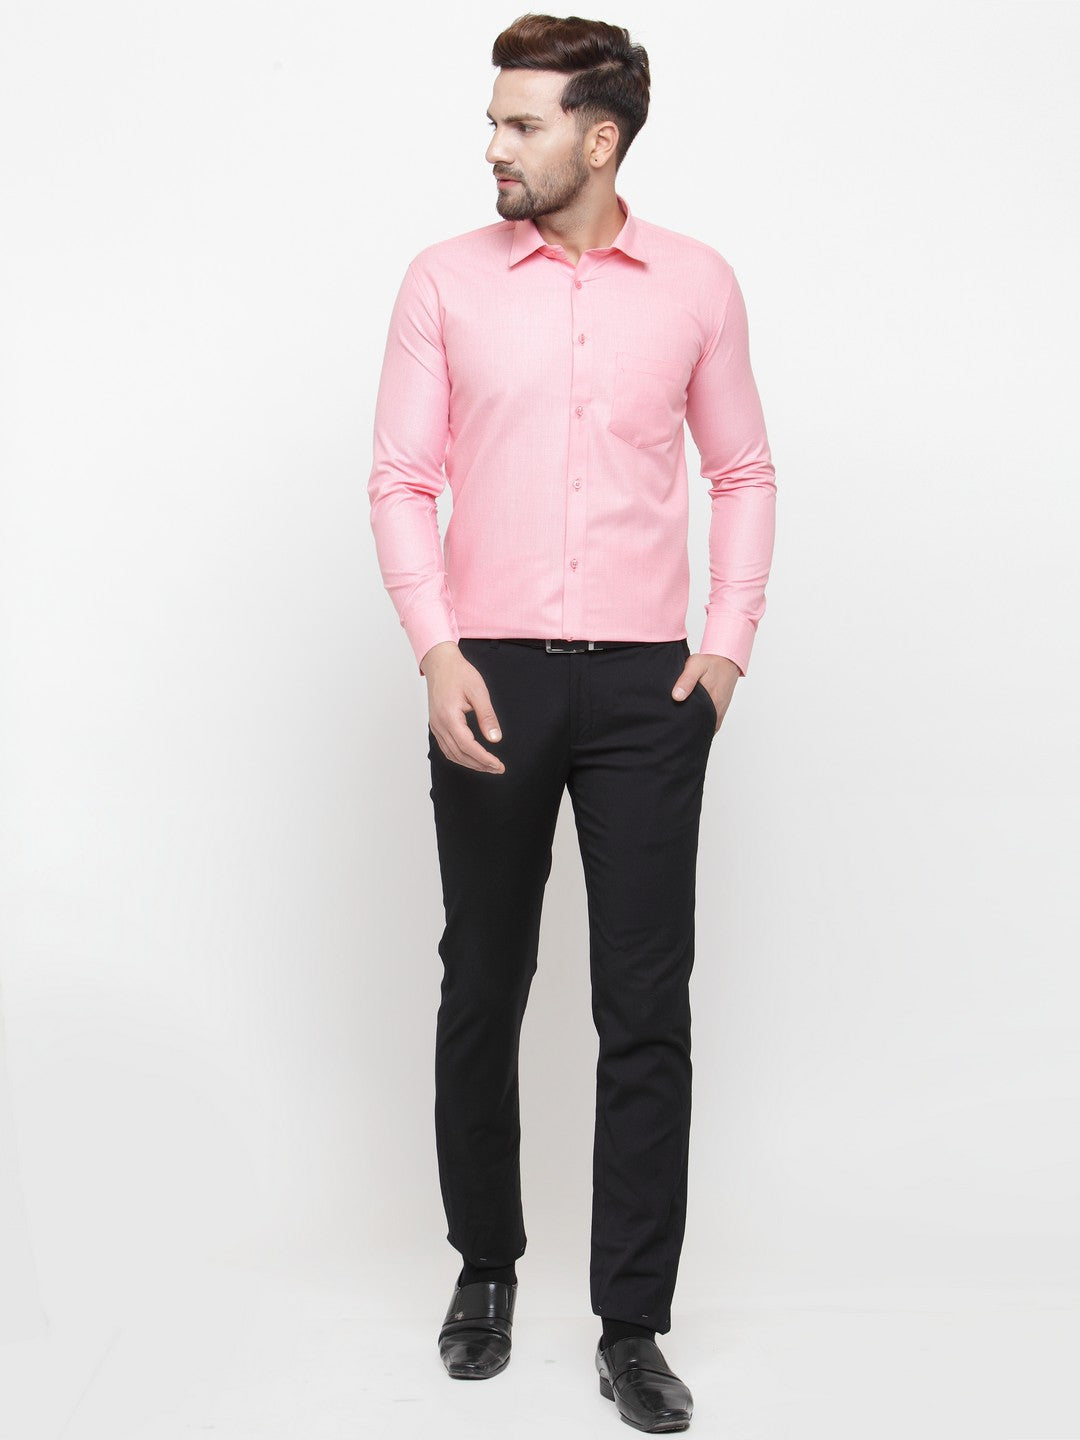 Men's Pink Cotton Geometric Formal Shirts ( SF 434Pink ) - Jainish